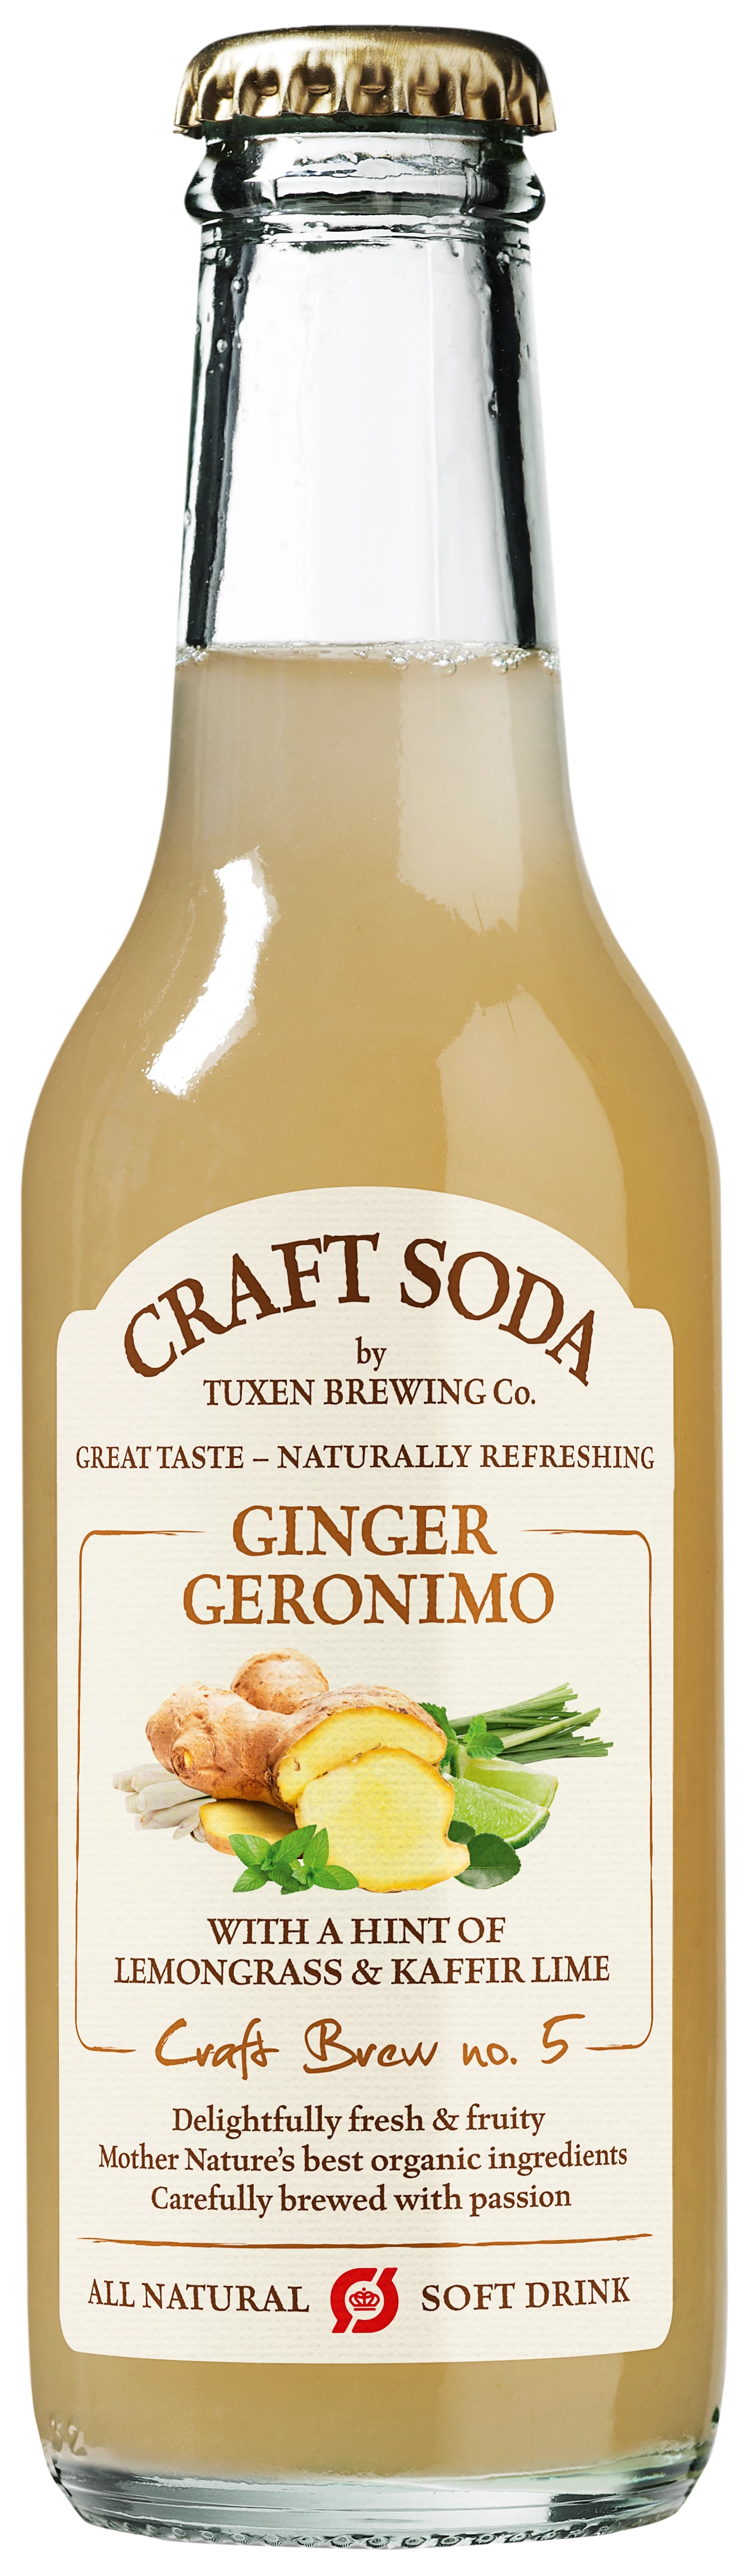 Løgismose Soft drinks - Craft Soda - Ginger Geronimo 20cl - 207036